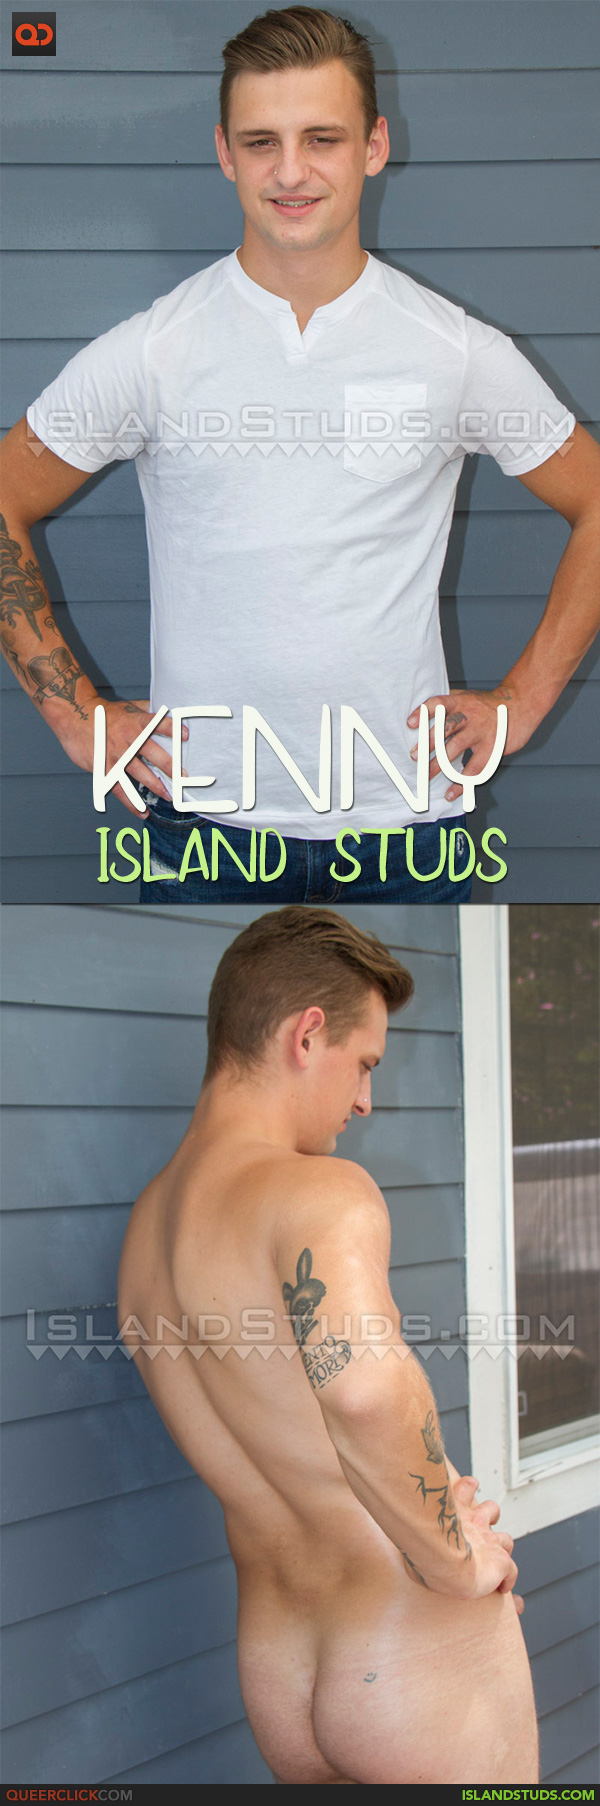 Island Studs: Kenny